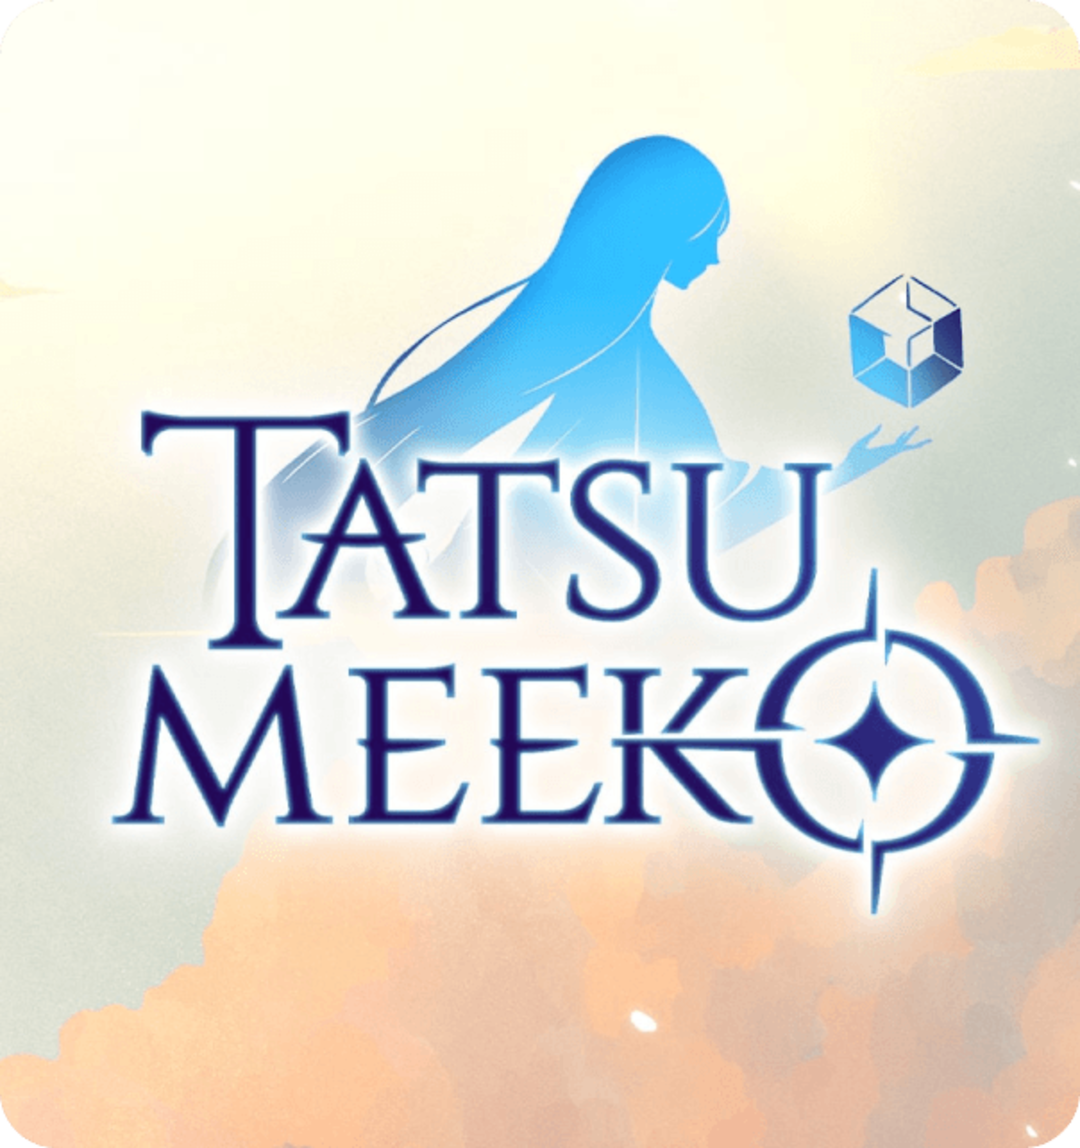 Tatsumeeko